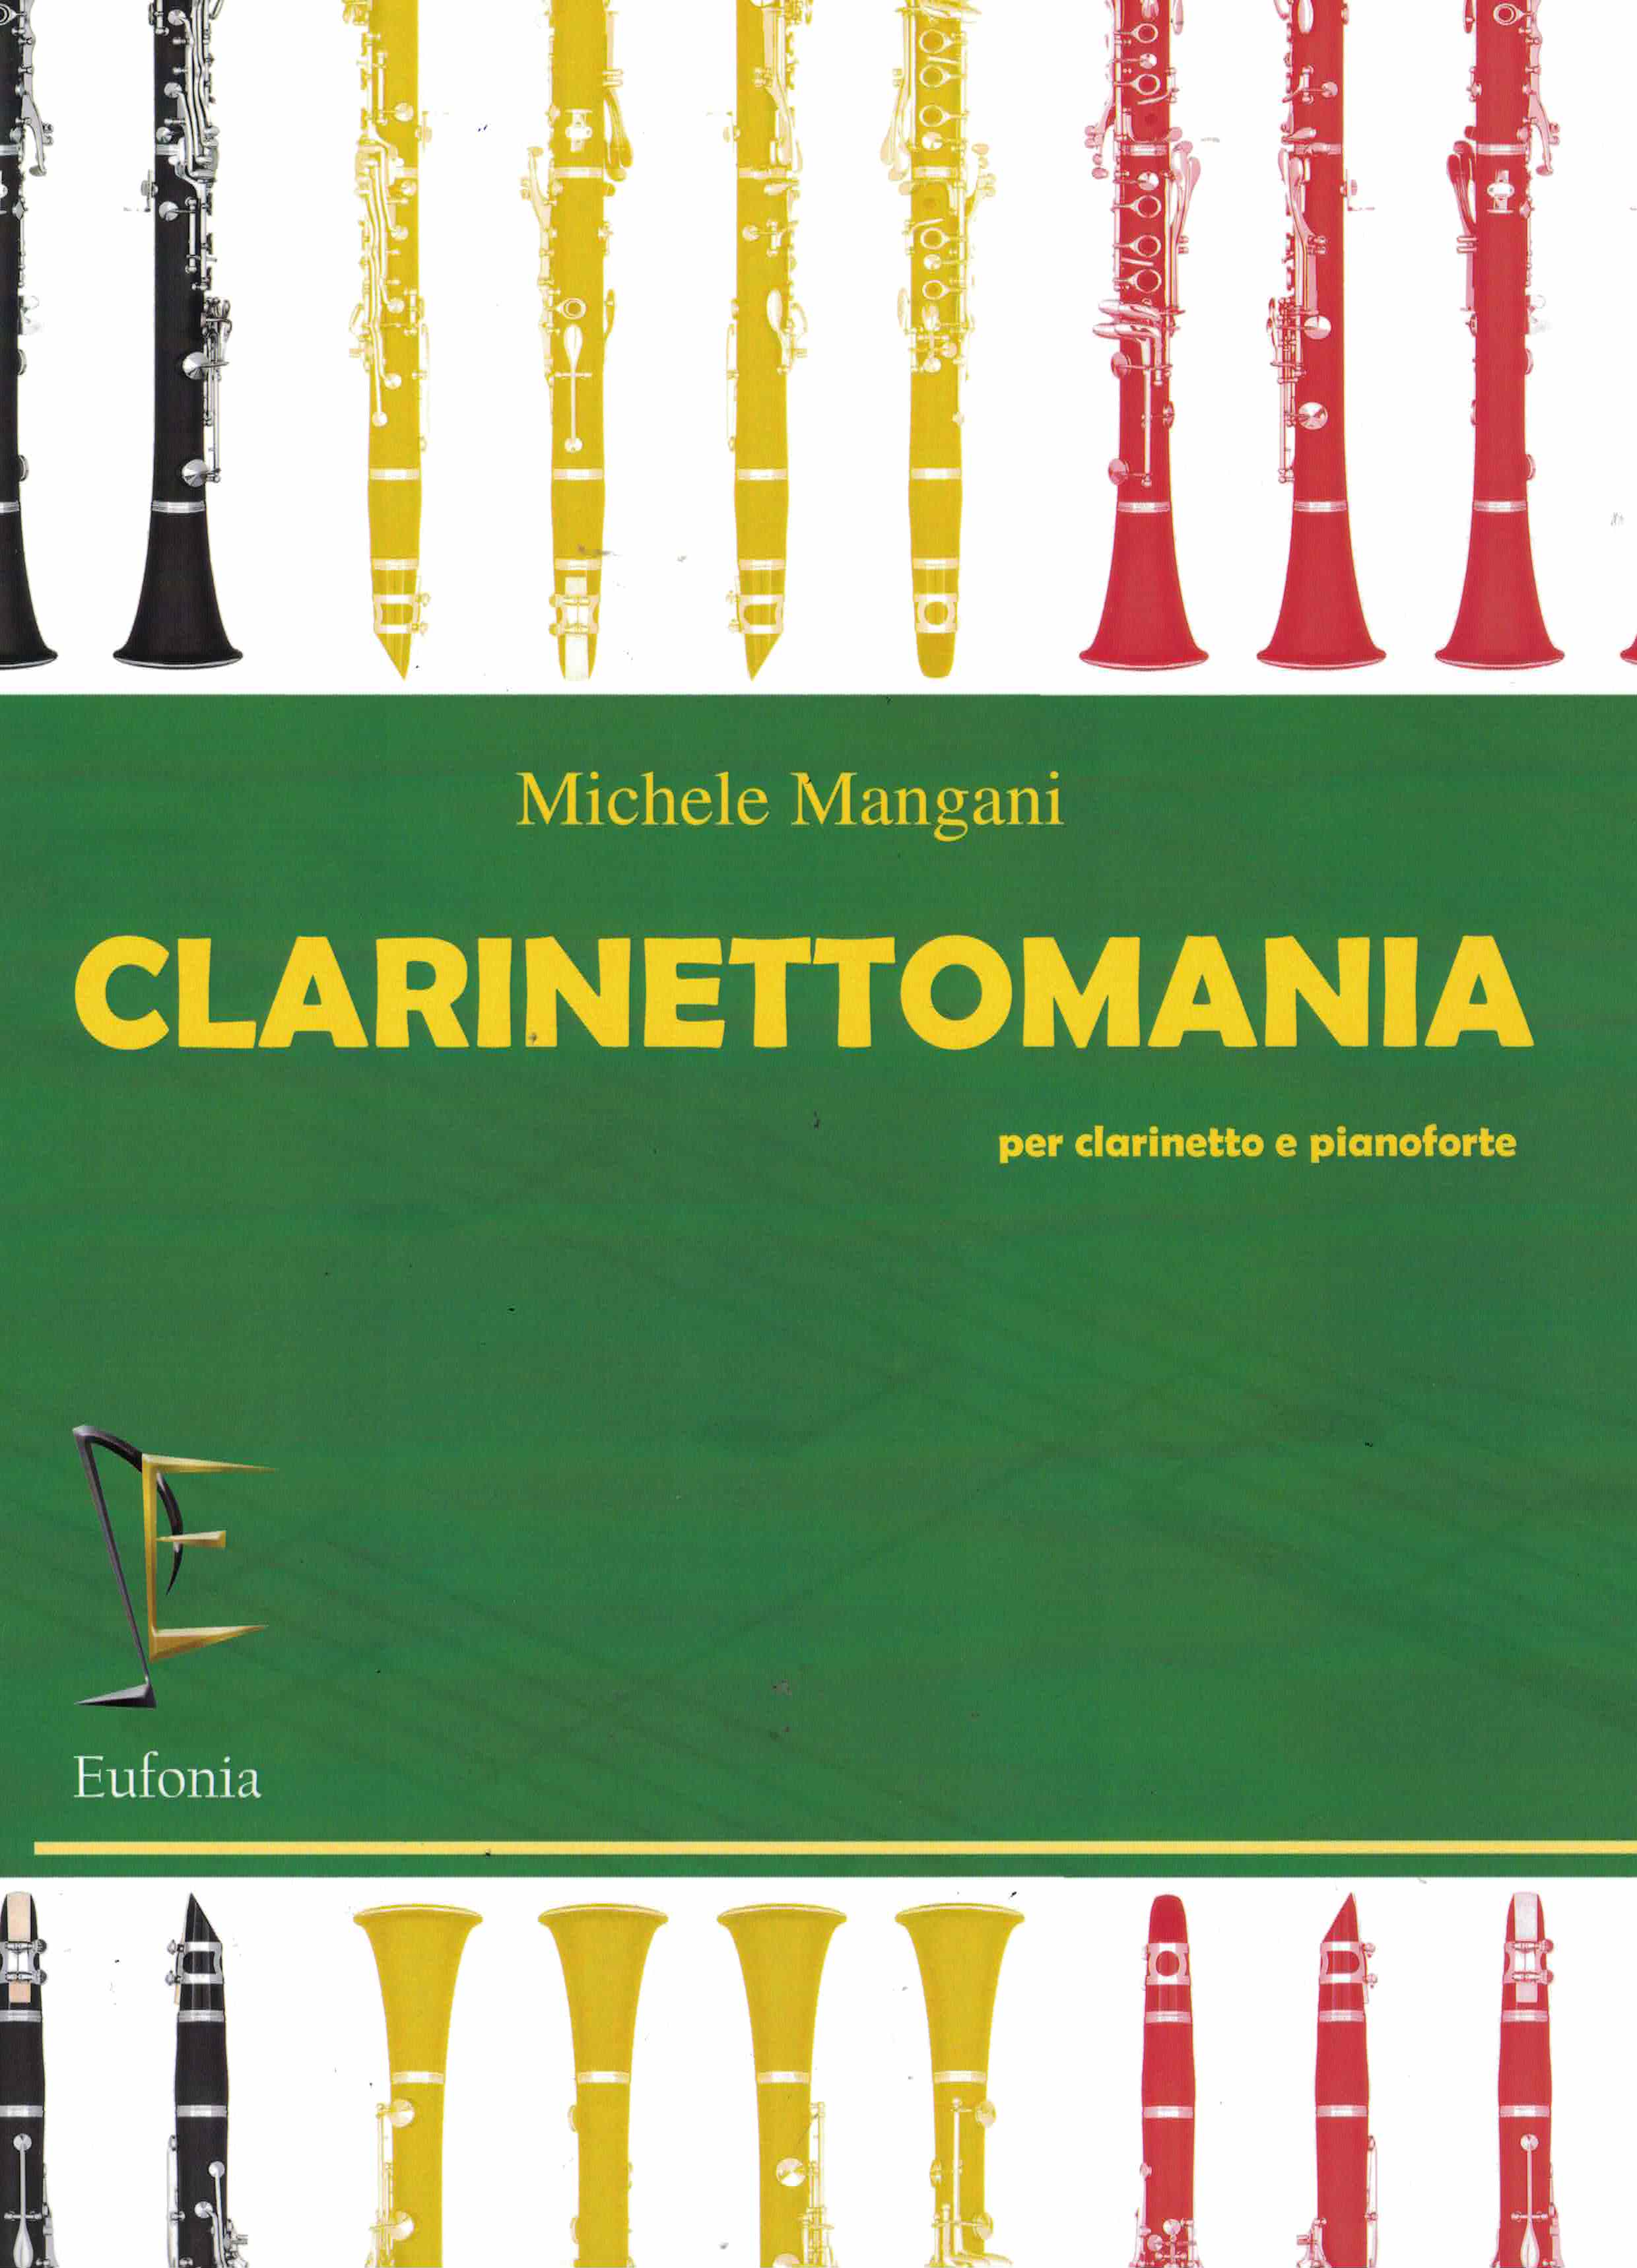 Clarinettomania, Mangani, Klar Klav